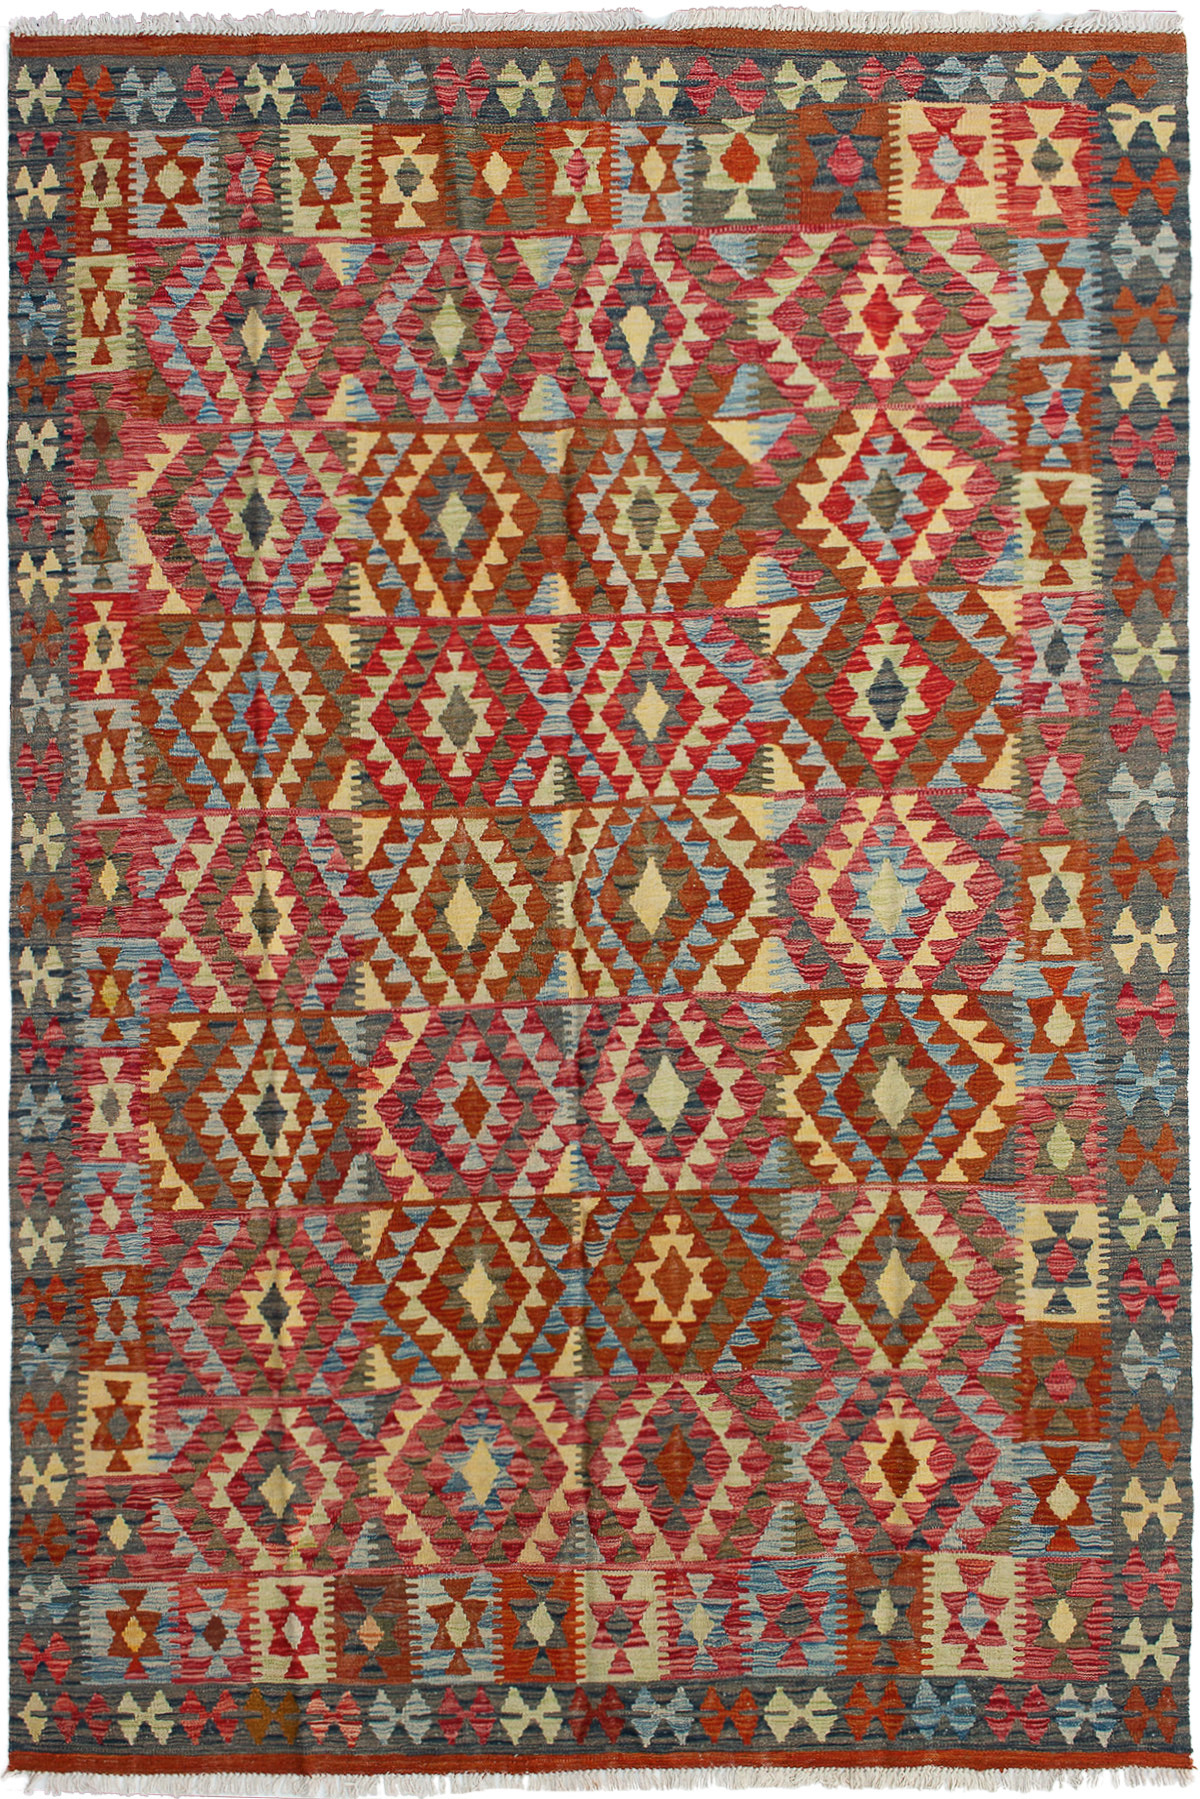 Hand woven Kashkoli FW Red, Tan Wool Kilim 6'4" x 9'11" Size: 6'4" x 9'11"  